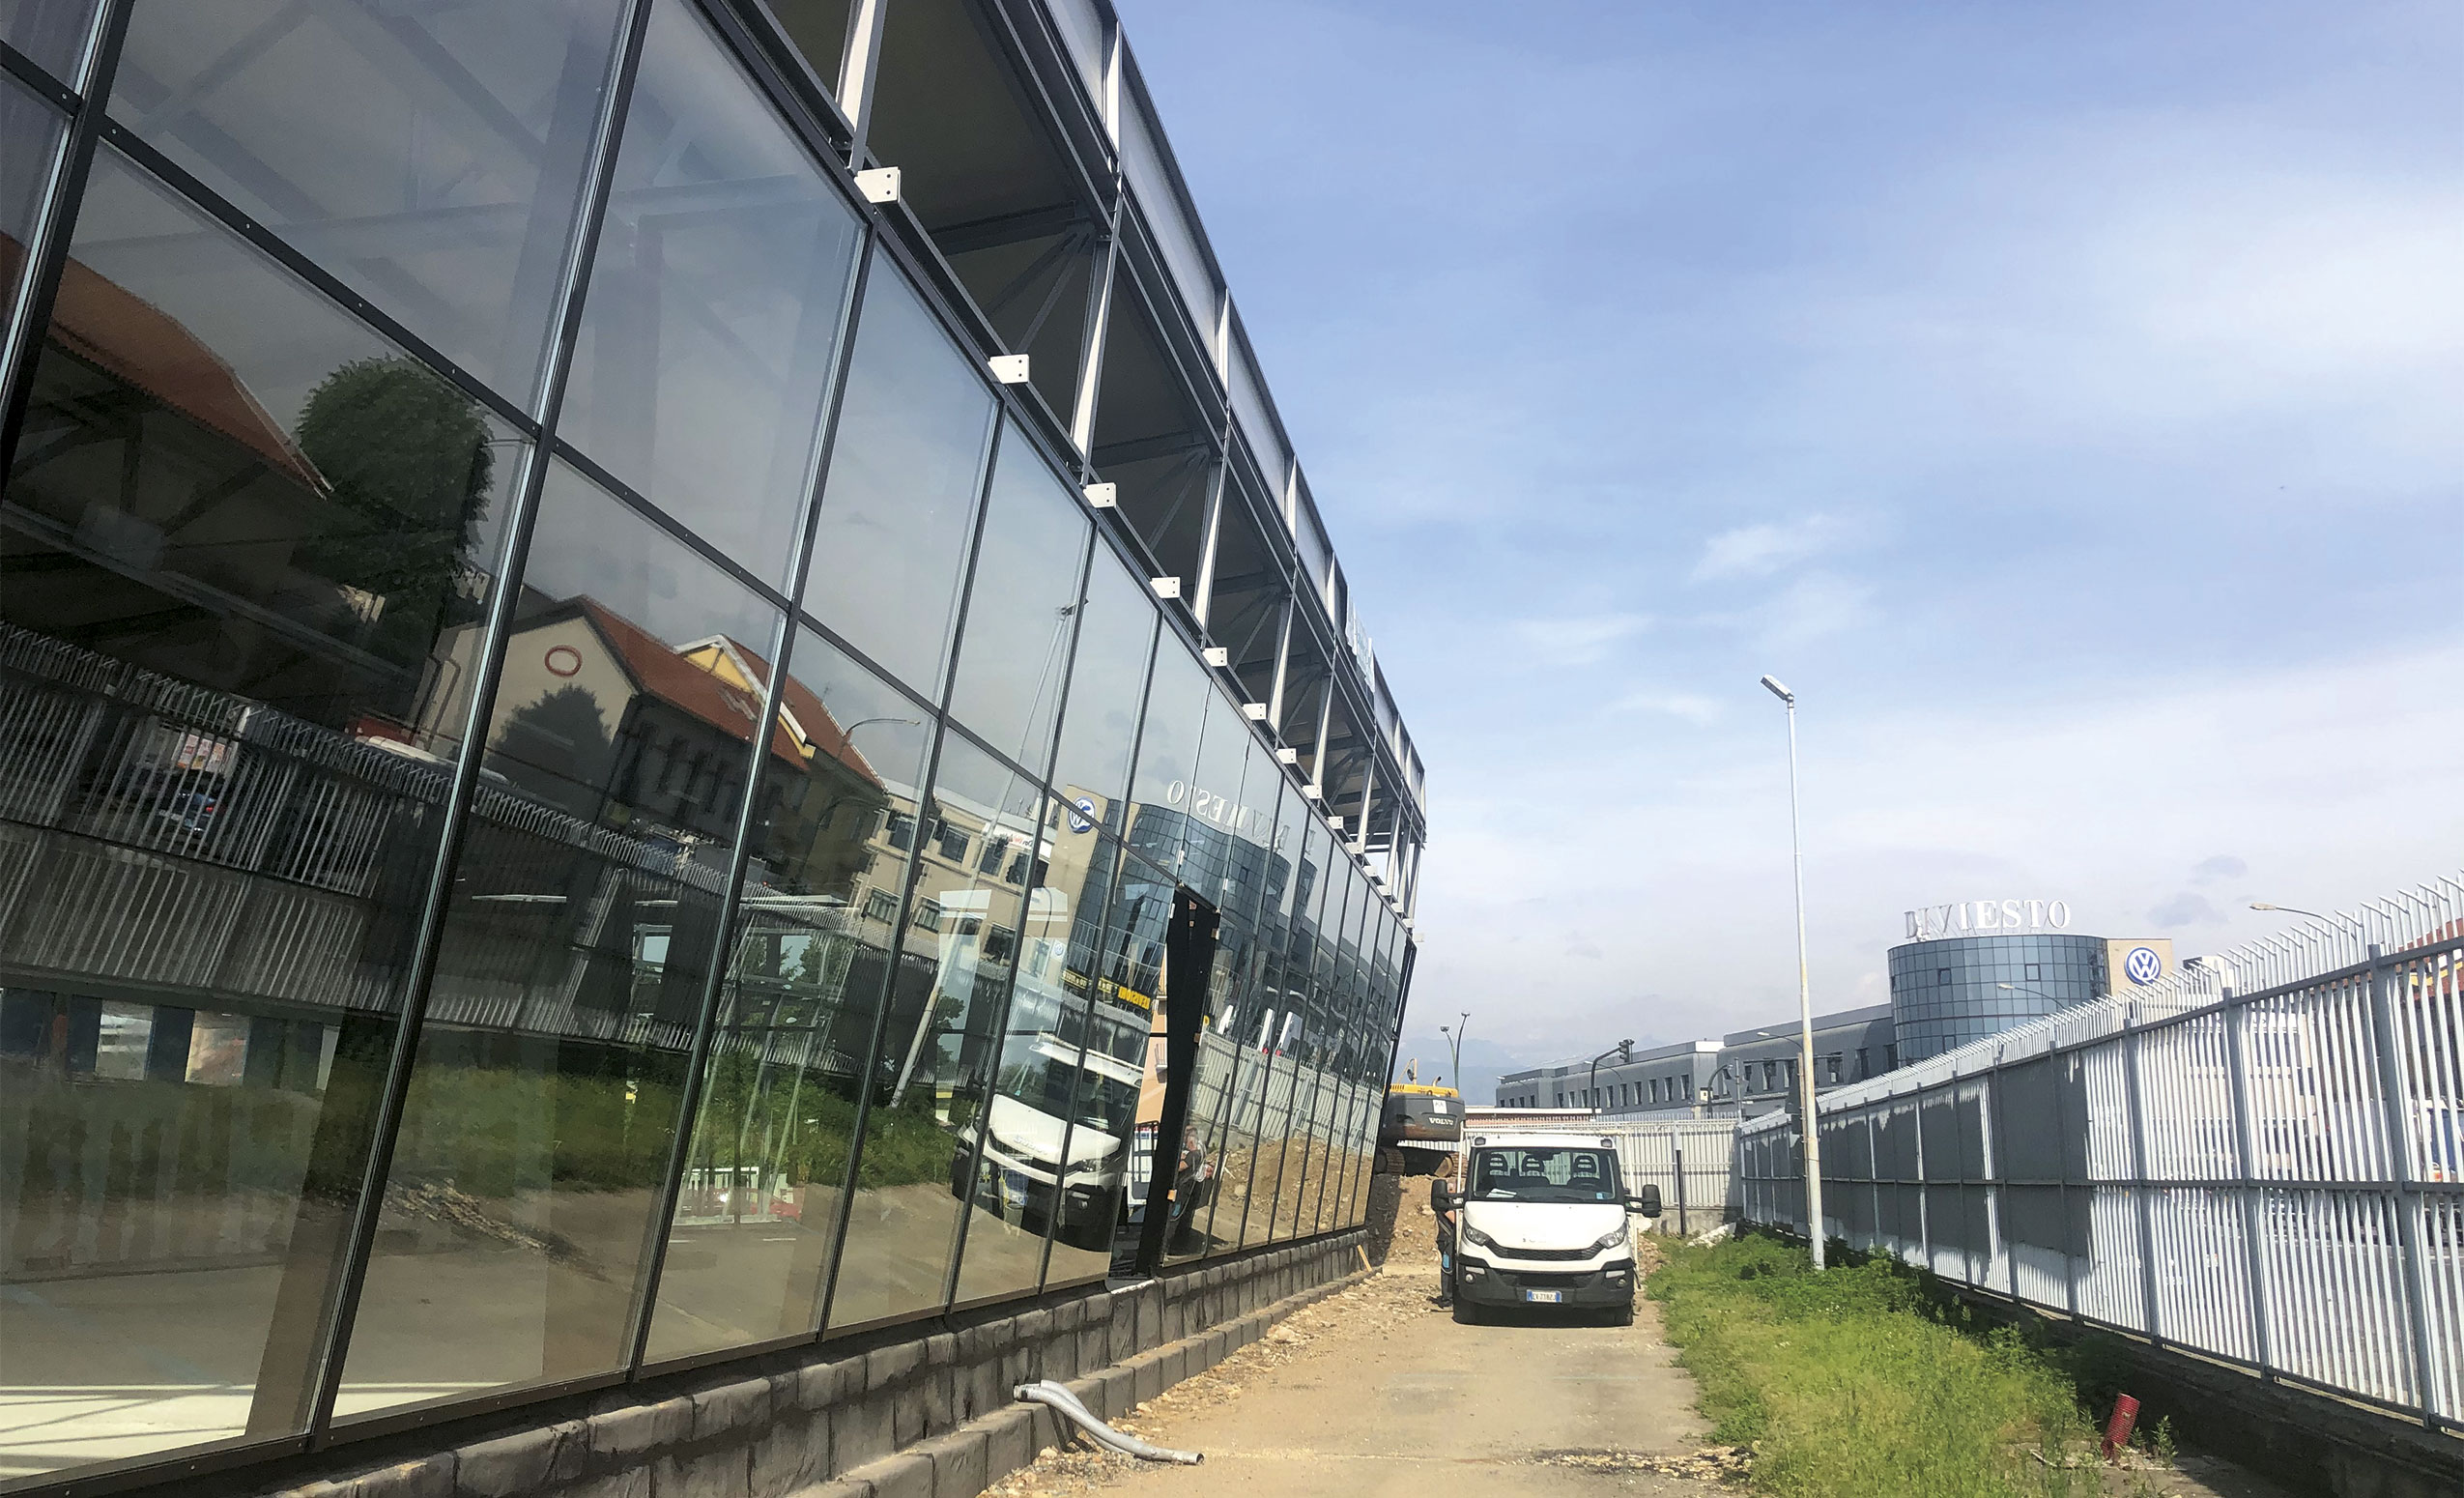 Spazio Group SpA. Costruzione di due nuovi autosaloni Toyota e Lexus in via Ala di Stura a Torino